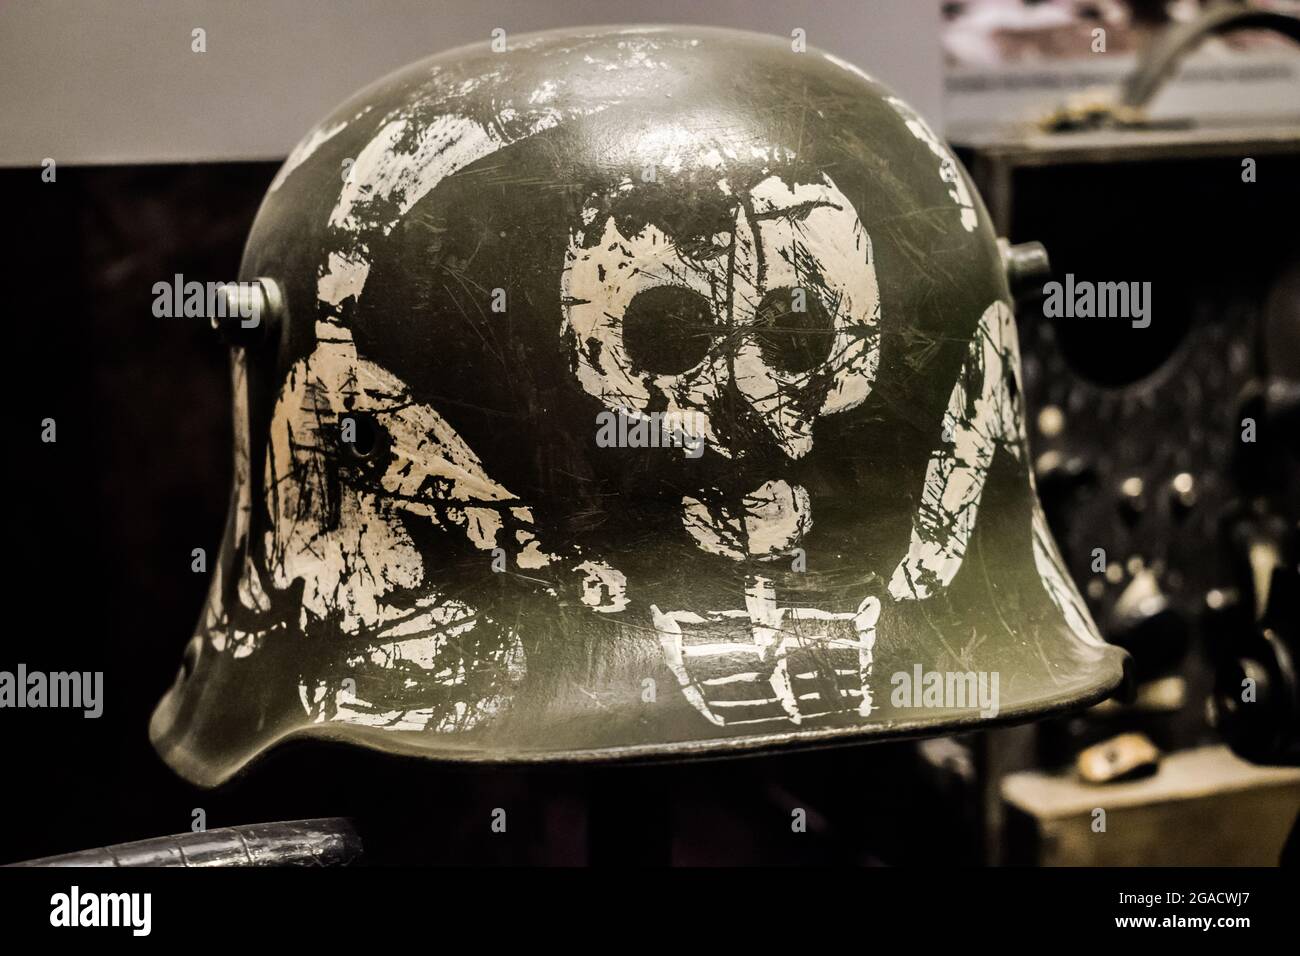 Mosca, Russia: Marzo 18 2018: Casco militare finlandese della seconda guerra mondiale, esposto al museo miltar di mosca Foto Stock